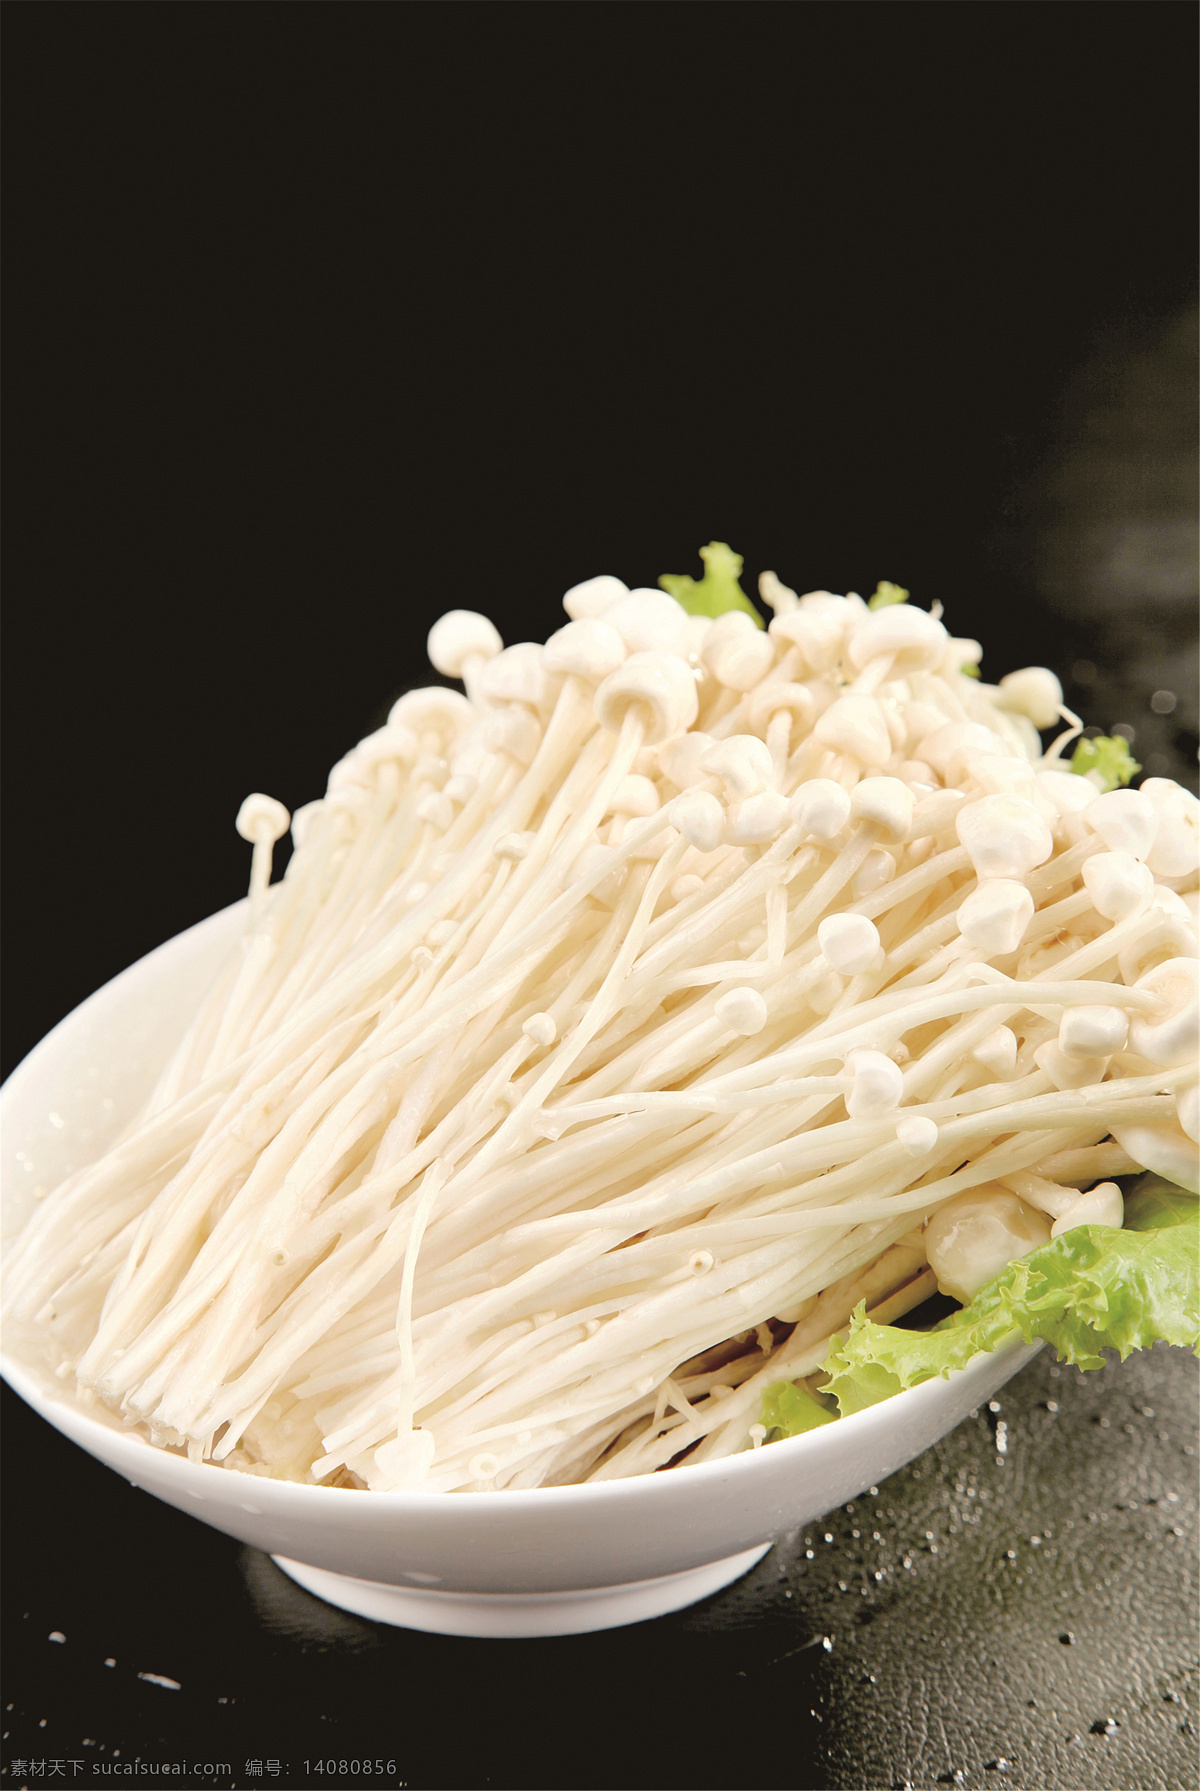 金针菇图片 金针菇 美食 传统美食 餐饮美食 高清菜谱用图